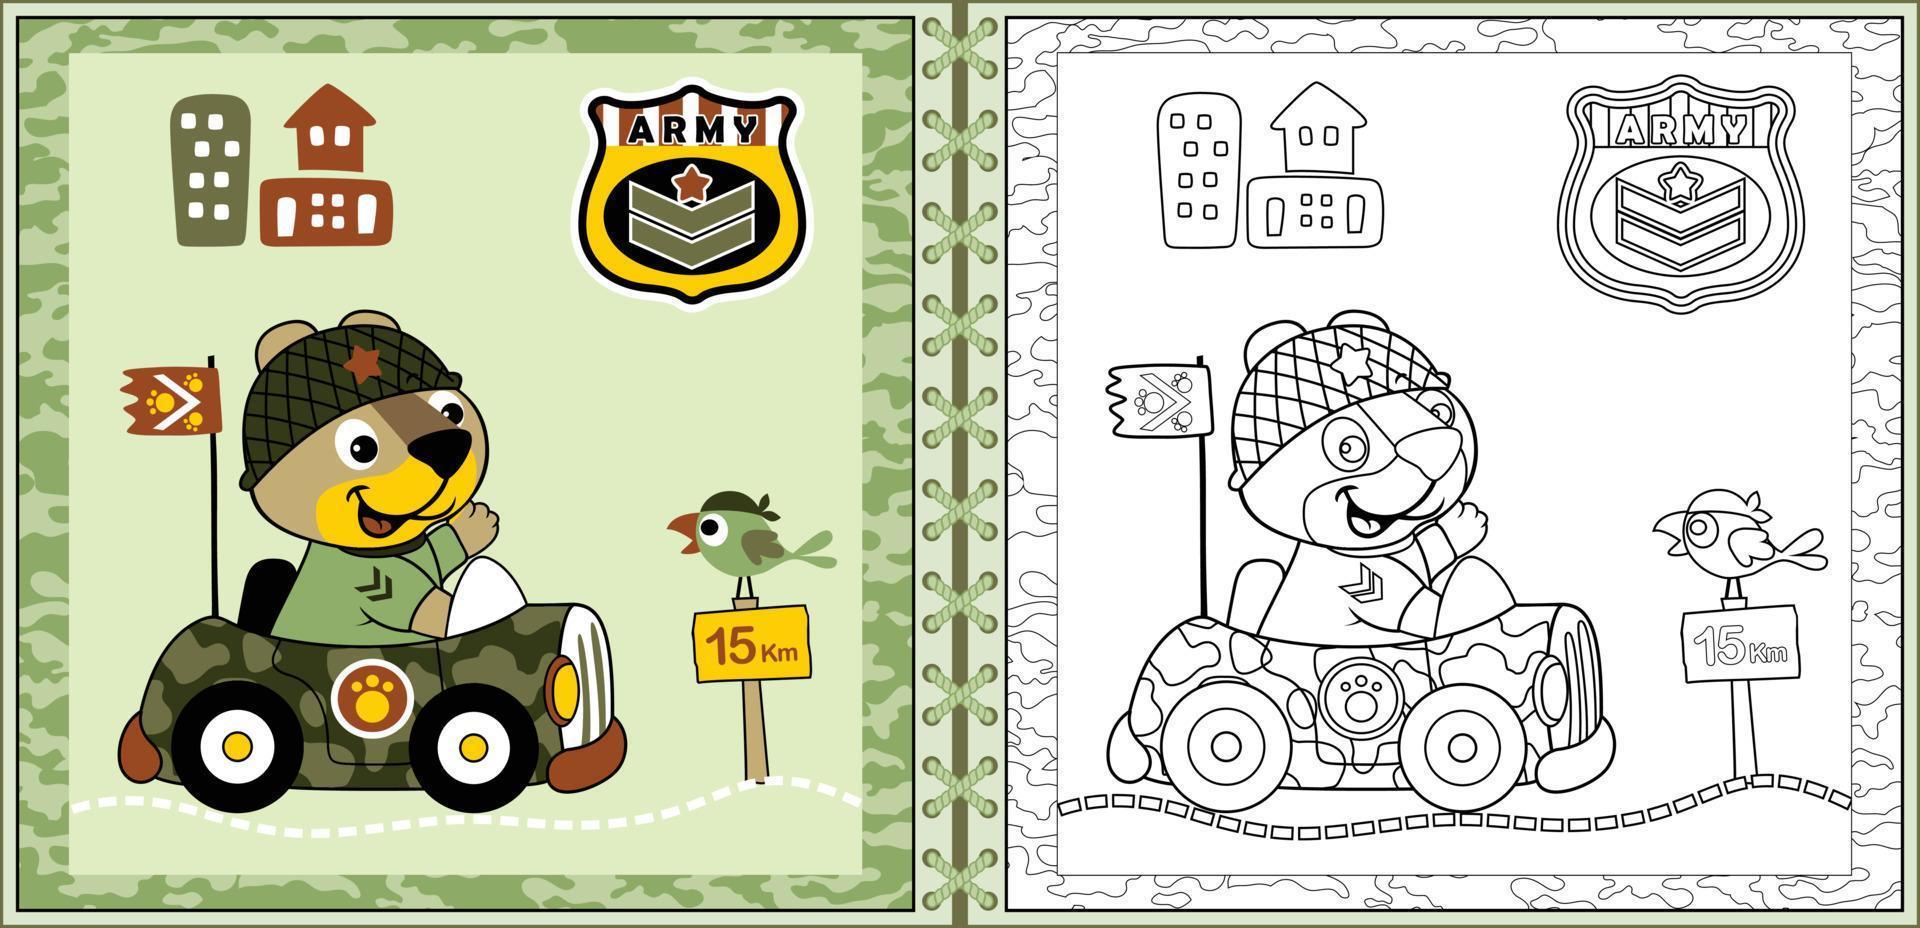 lindo gato de dibujos animados conduciendo un camión militar en un marco de camuflaje con aves, elementos militares. libro o página para colorear vector